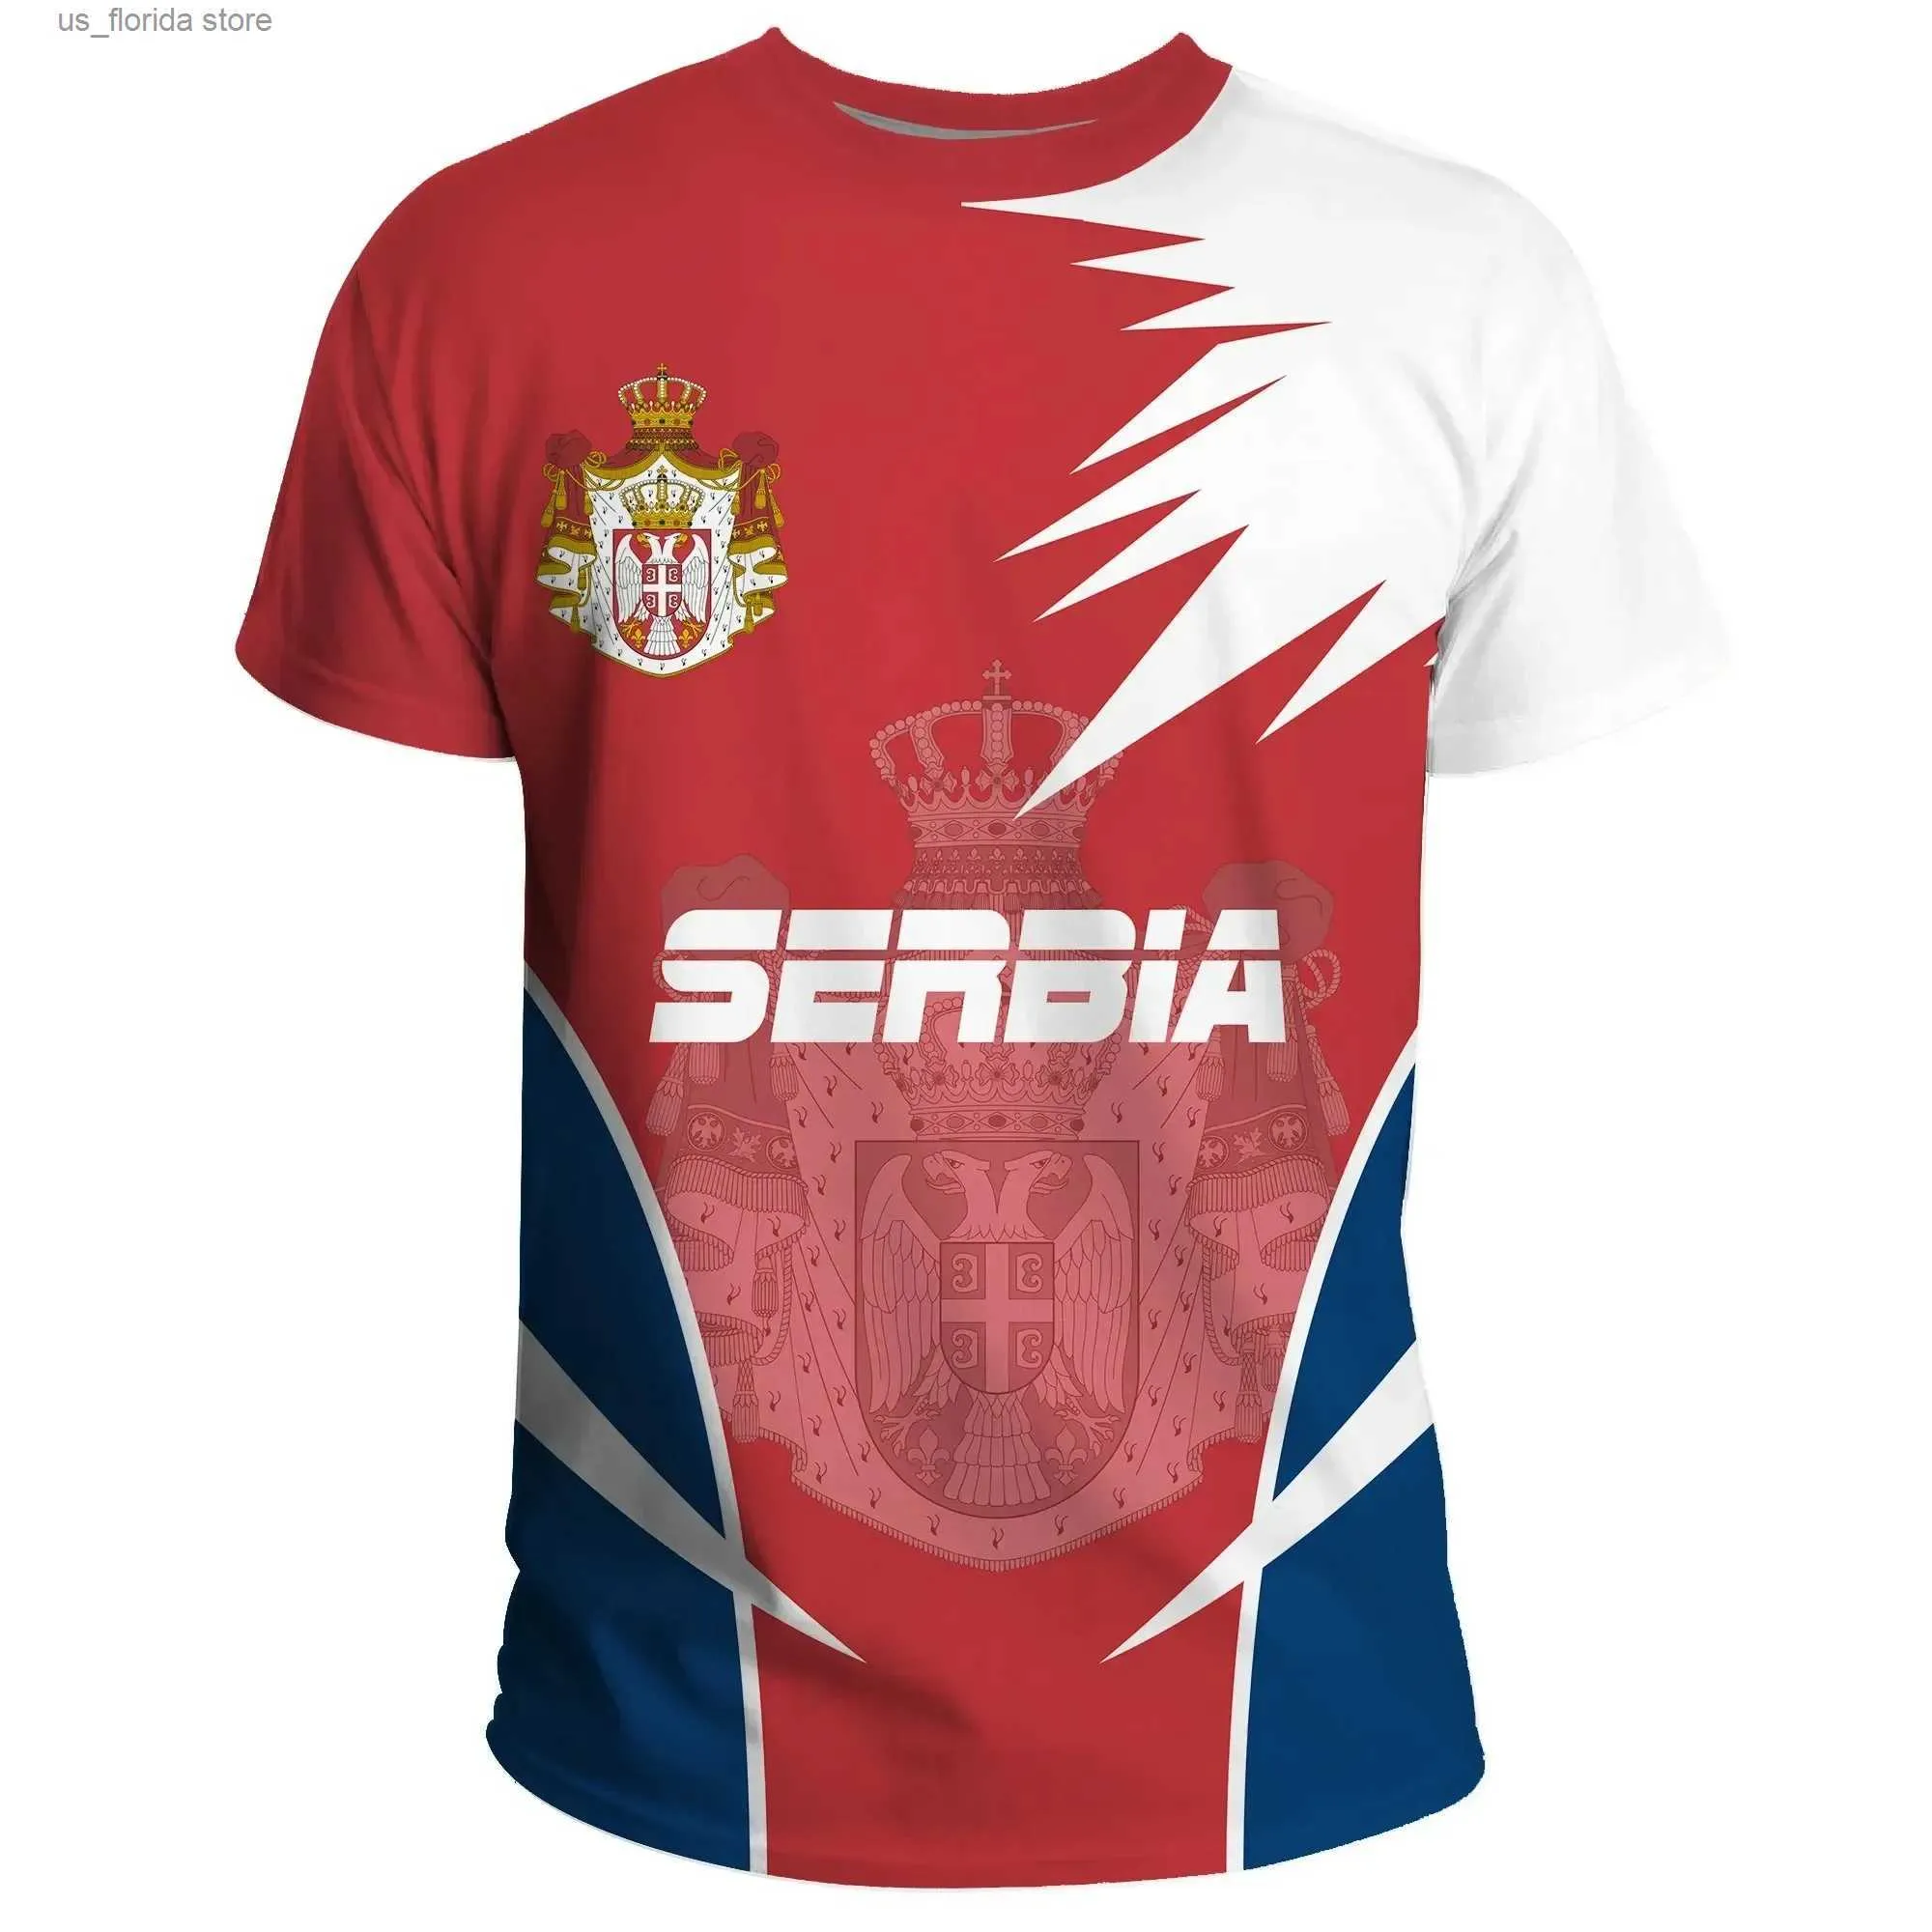 T-shirts pour hommes Hommes Grand T-shirt en vrac Serbe Hommes Femmes Casual T-shirt Drapeau de Serbie Emblème national Impression 3D Mode Ras du cou Tops Y240321